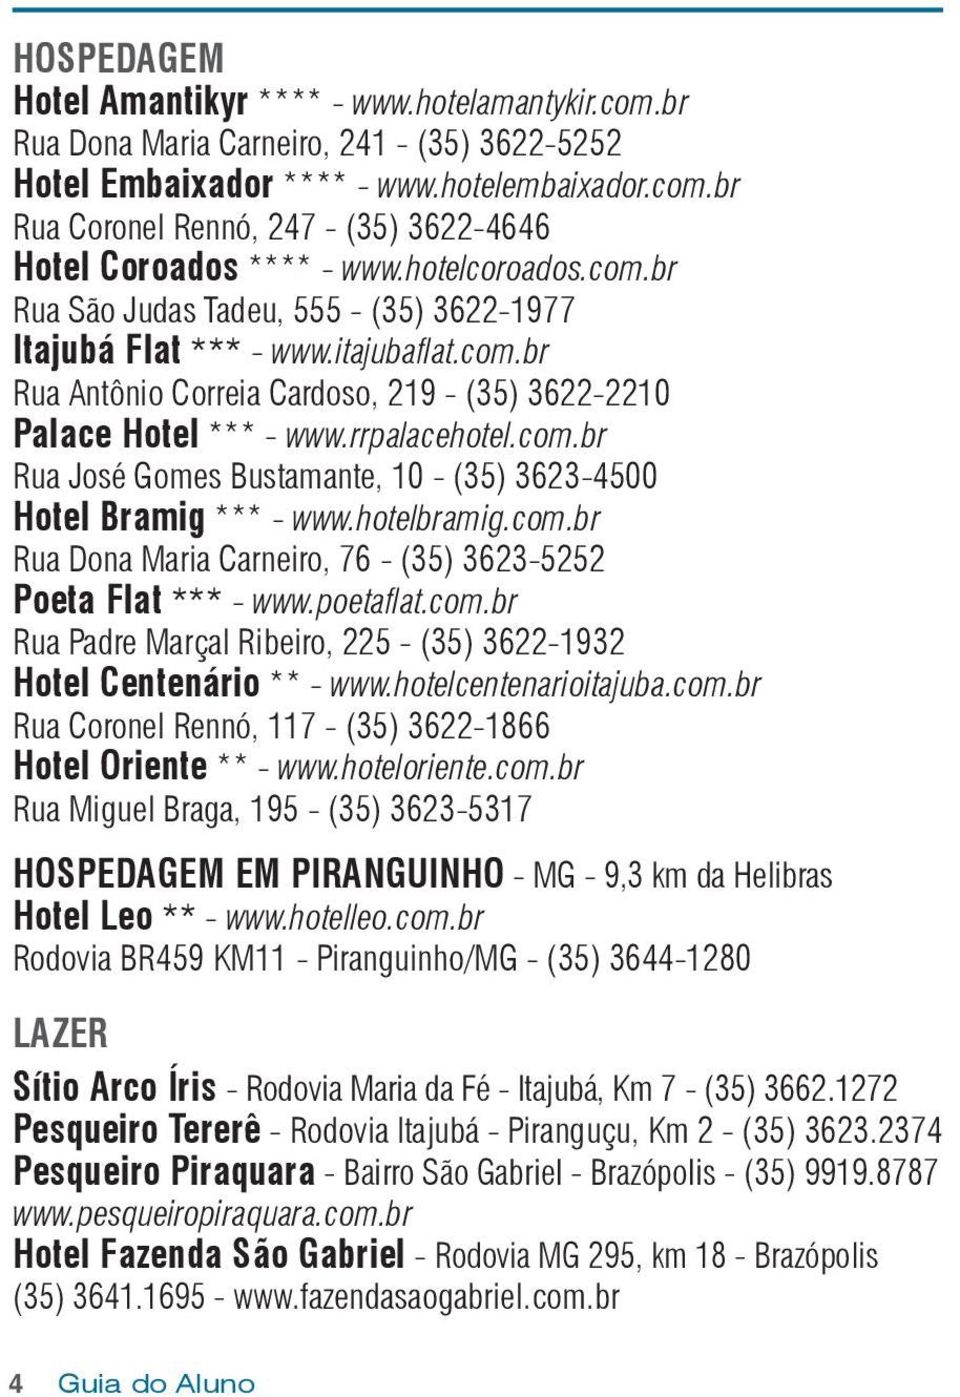 hotelbramig.com.br Rua Dona Maria Carneiro, 76 - (35) 3623-5252 Poeta Flat *** - www.poetaflat.com.br Rua Padre Marçal Ribeiro, 225 - (35) 3622-1932 Hotel Centenário ** - www.hotelcentenarioitajuba.